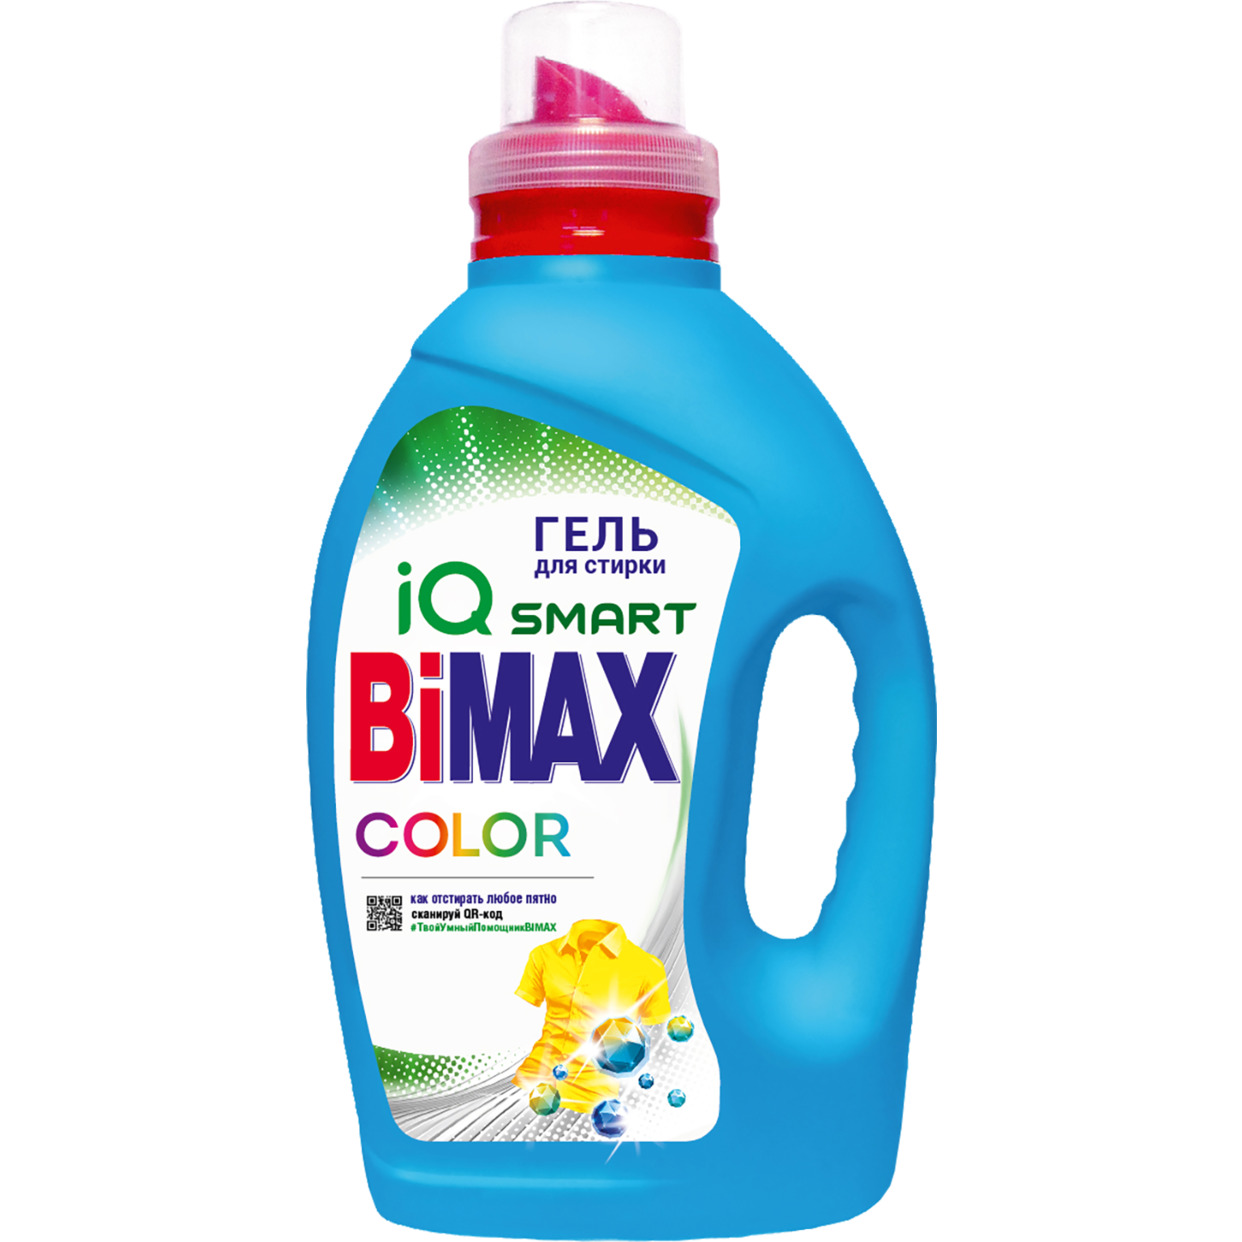 Средство для стирки жидкокое-гель "BiMax Color" 1300г по акции в Пятерочке